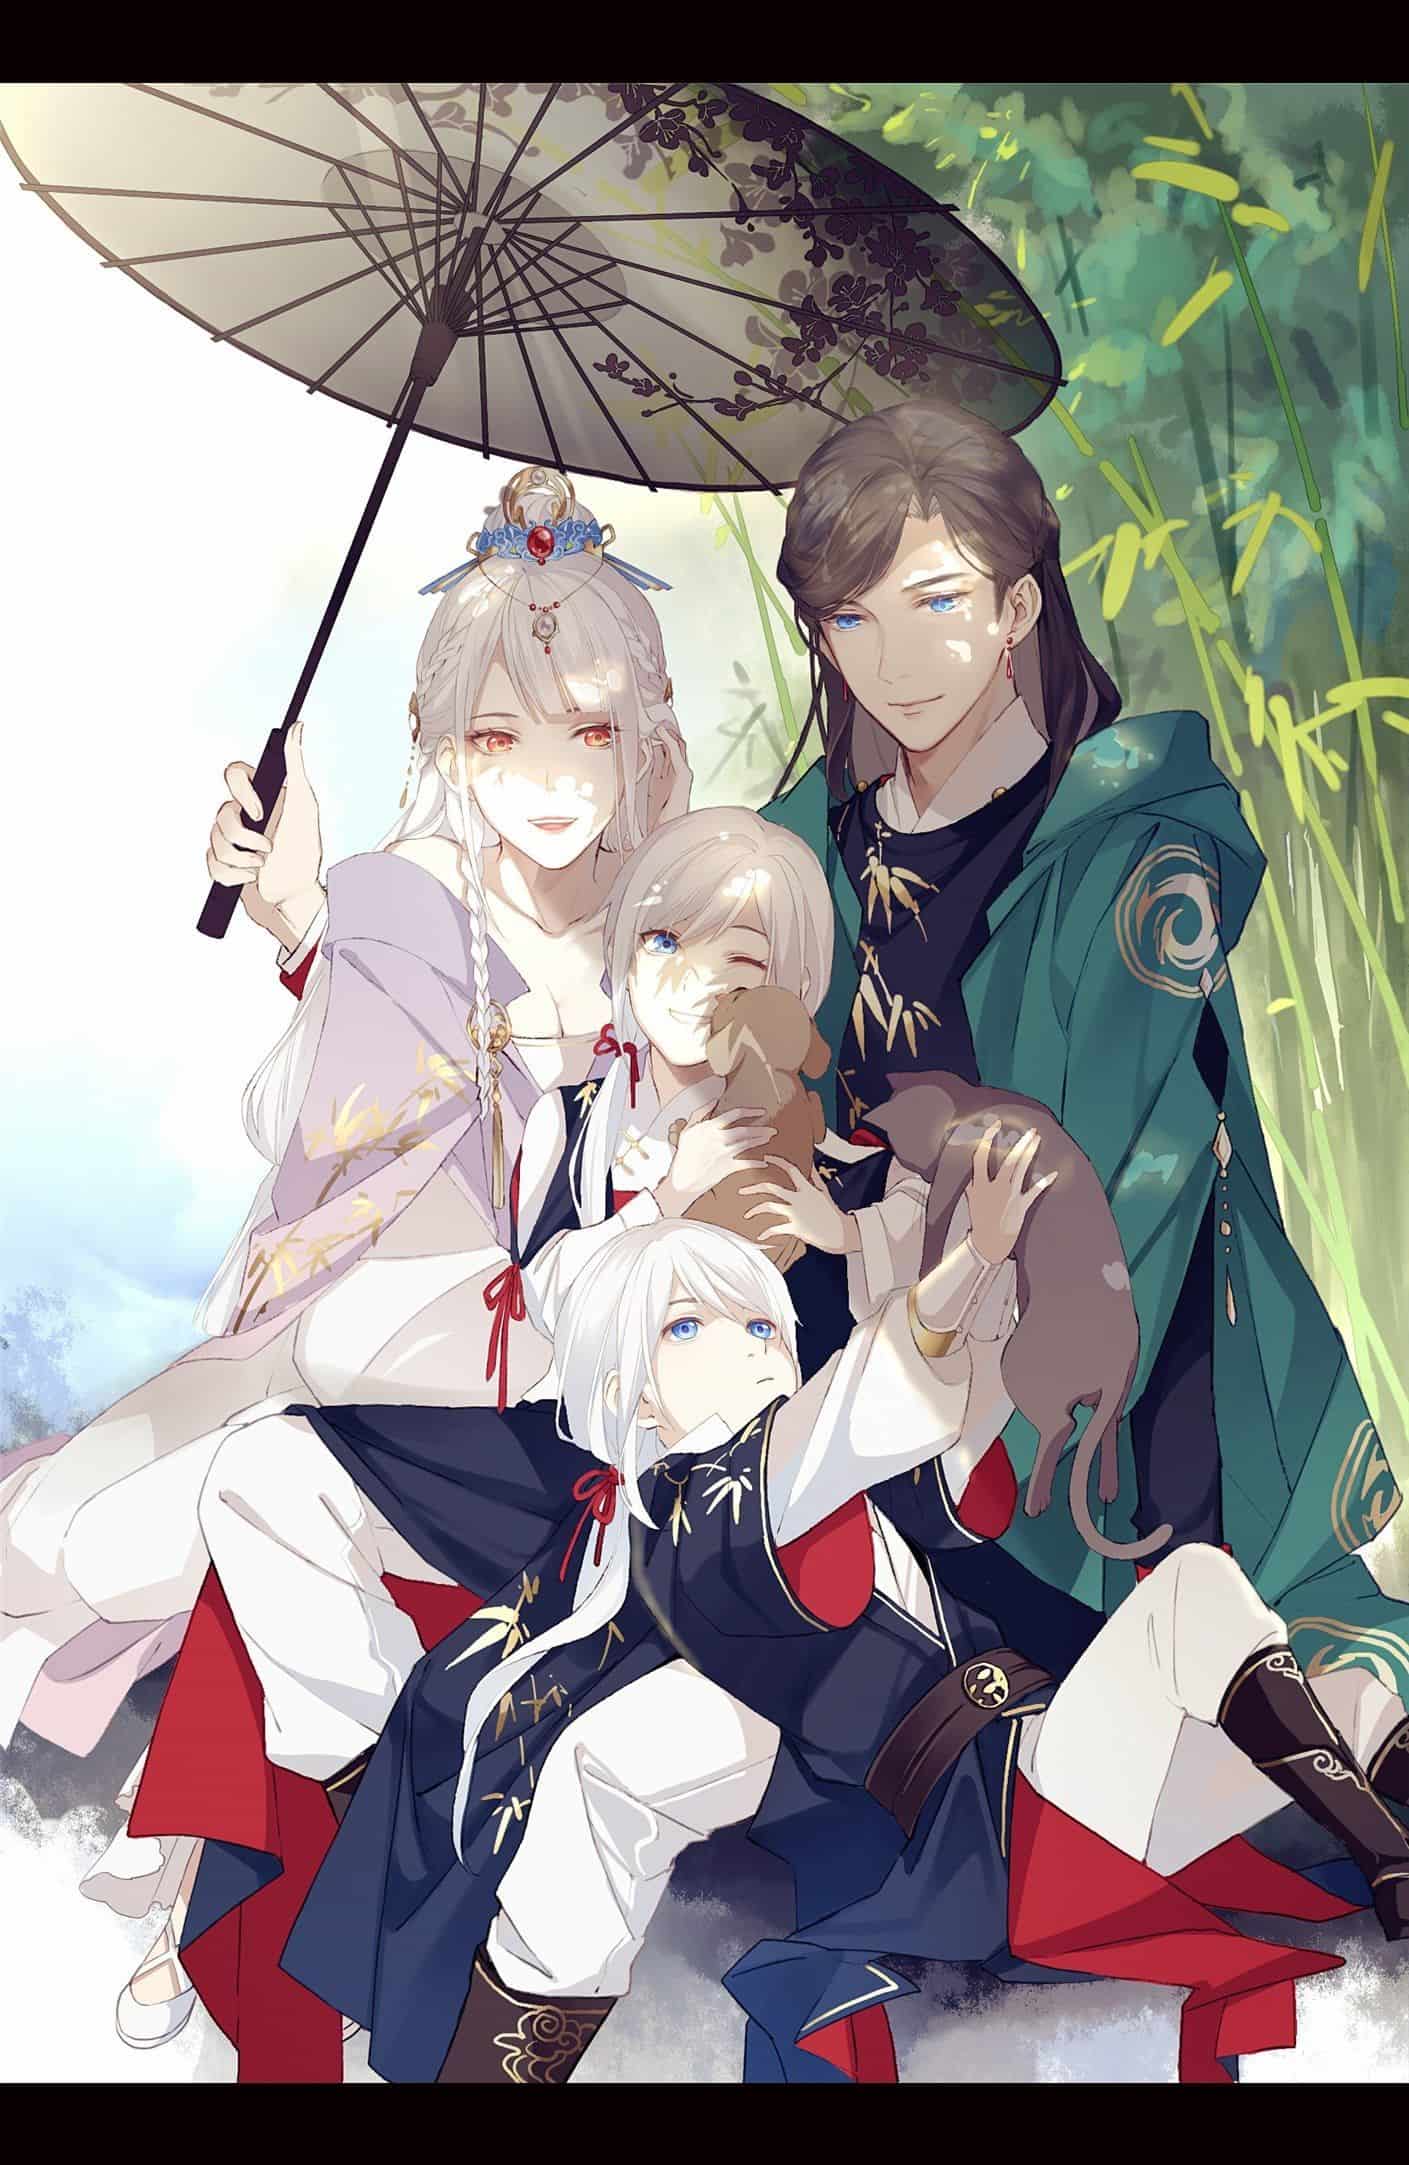 Hãy ngắm nhìn ảnh gia đình đẹp anime này để cảm nhận sự tình cảm và niềm hạnh phúc của một gia đình. Hình ảnh này đẹp đến mức nào bạn cũng sẽ muốn đặt làm hình nền điện thoại.